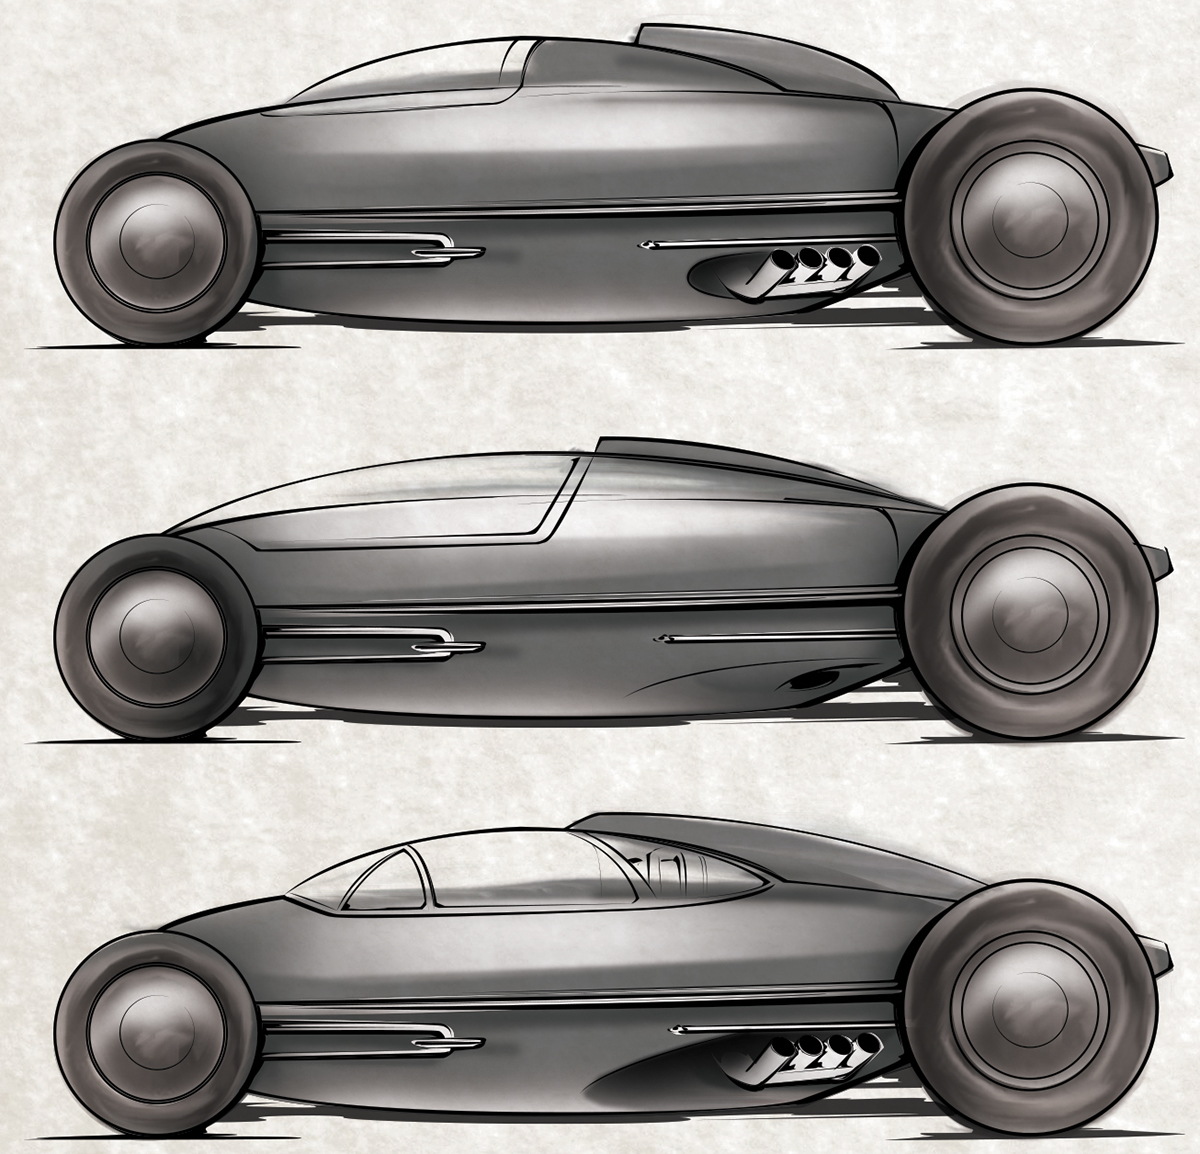 Concept for a nostalgia belly tank racer. 